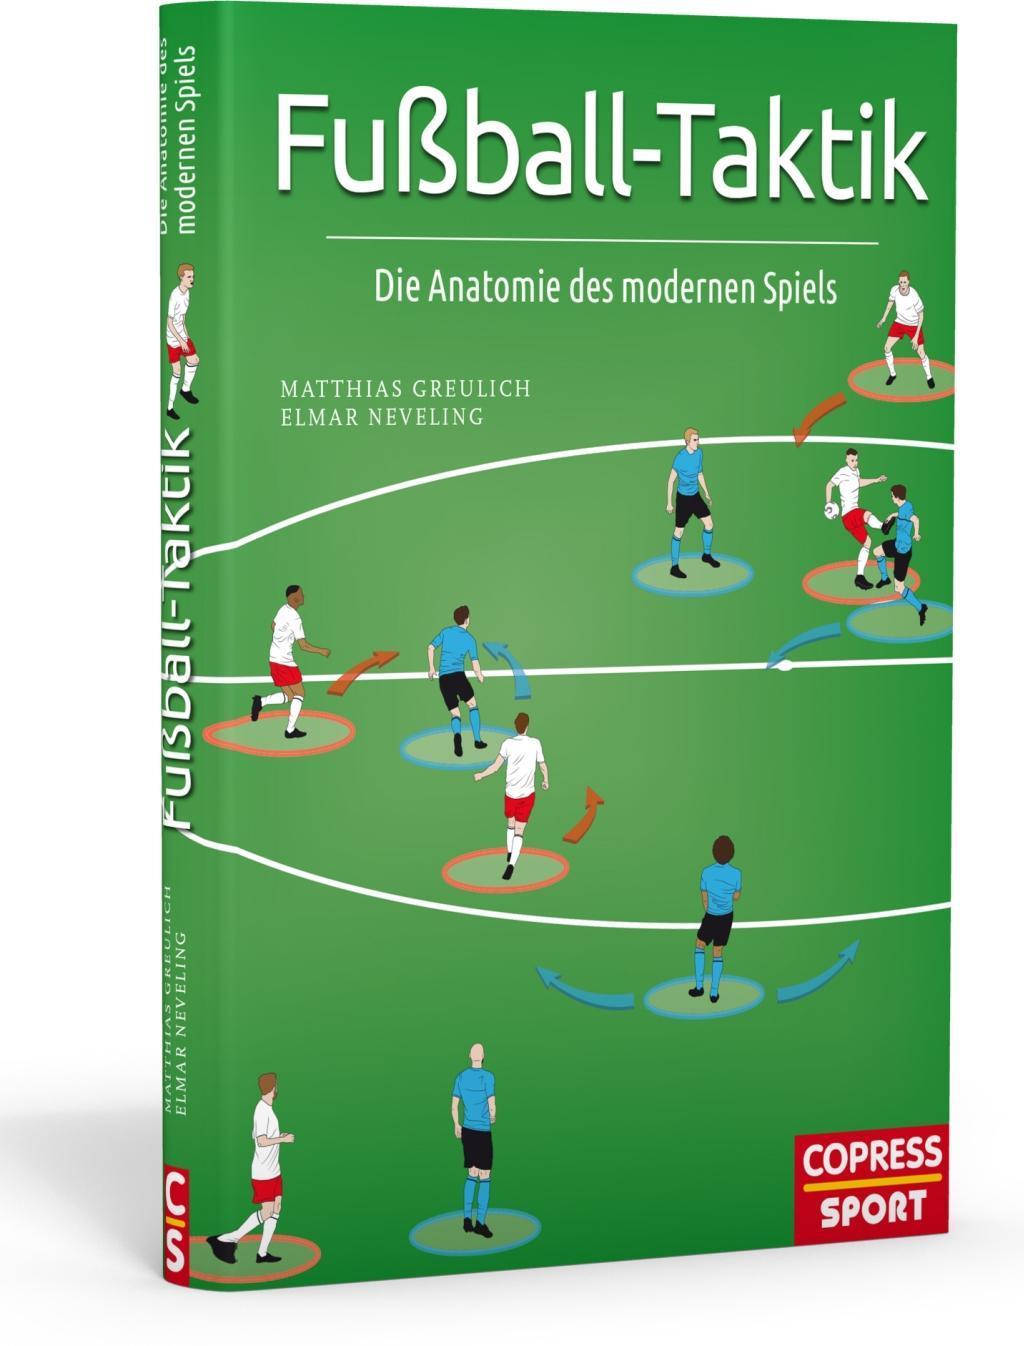 Fußball-Taktik Buch von Matthias Greulich versandkostenfrei